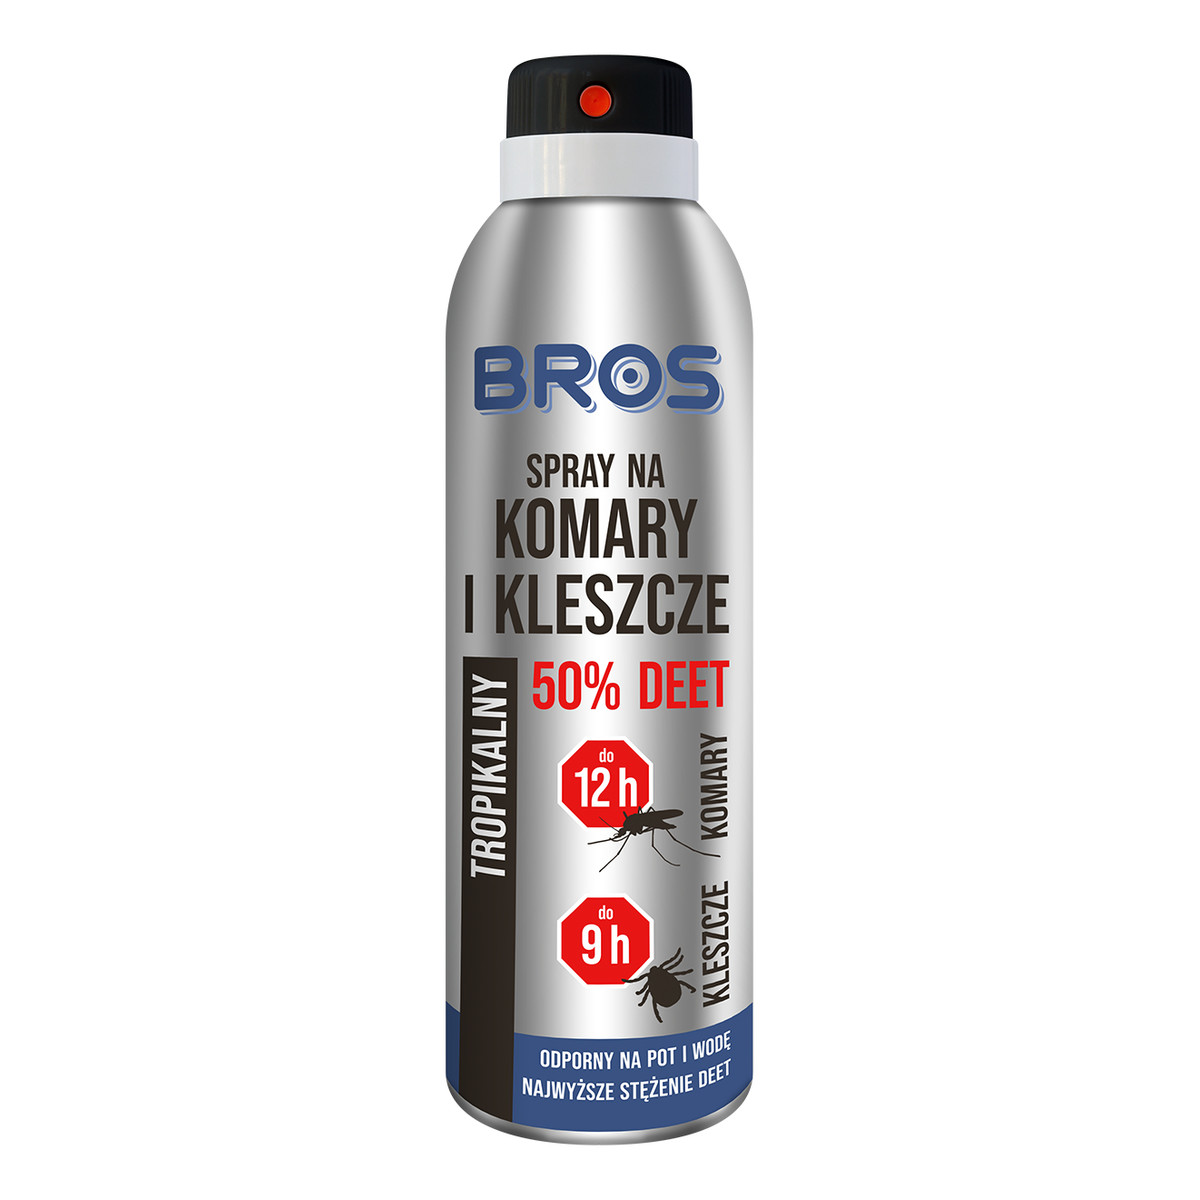 Bros Spray na komary i kleszcze 50% DEET tropikalny 180ml